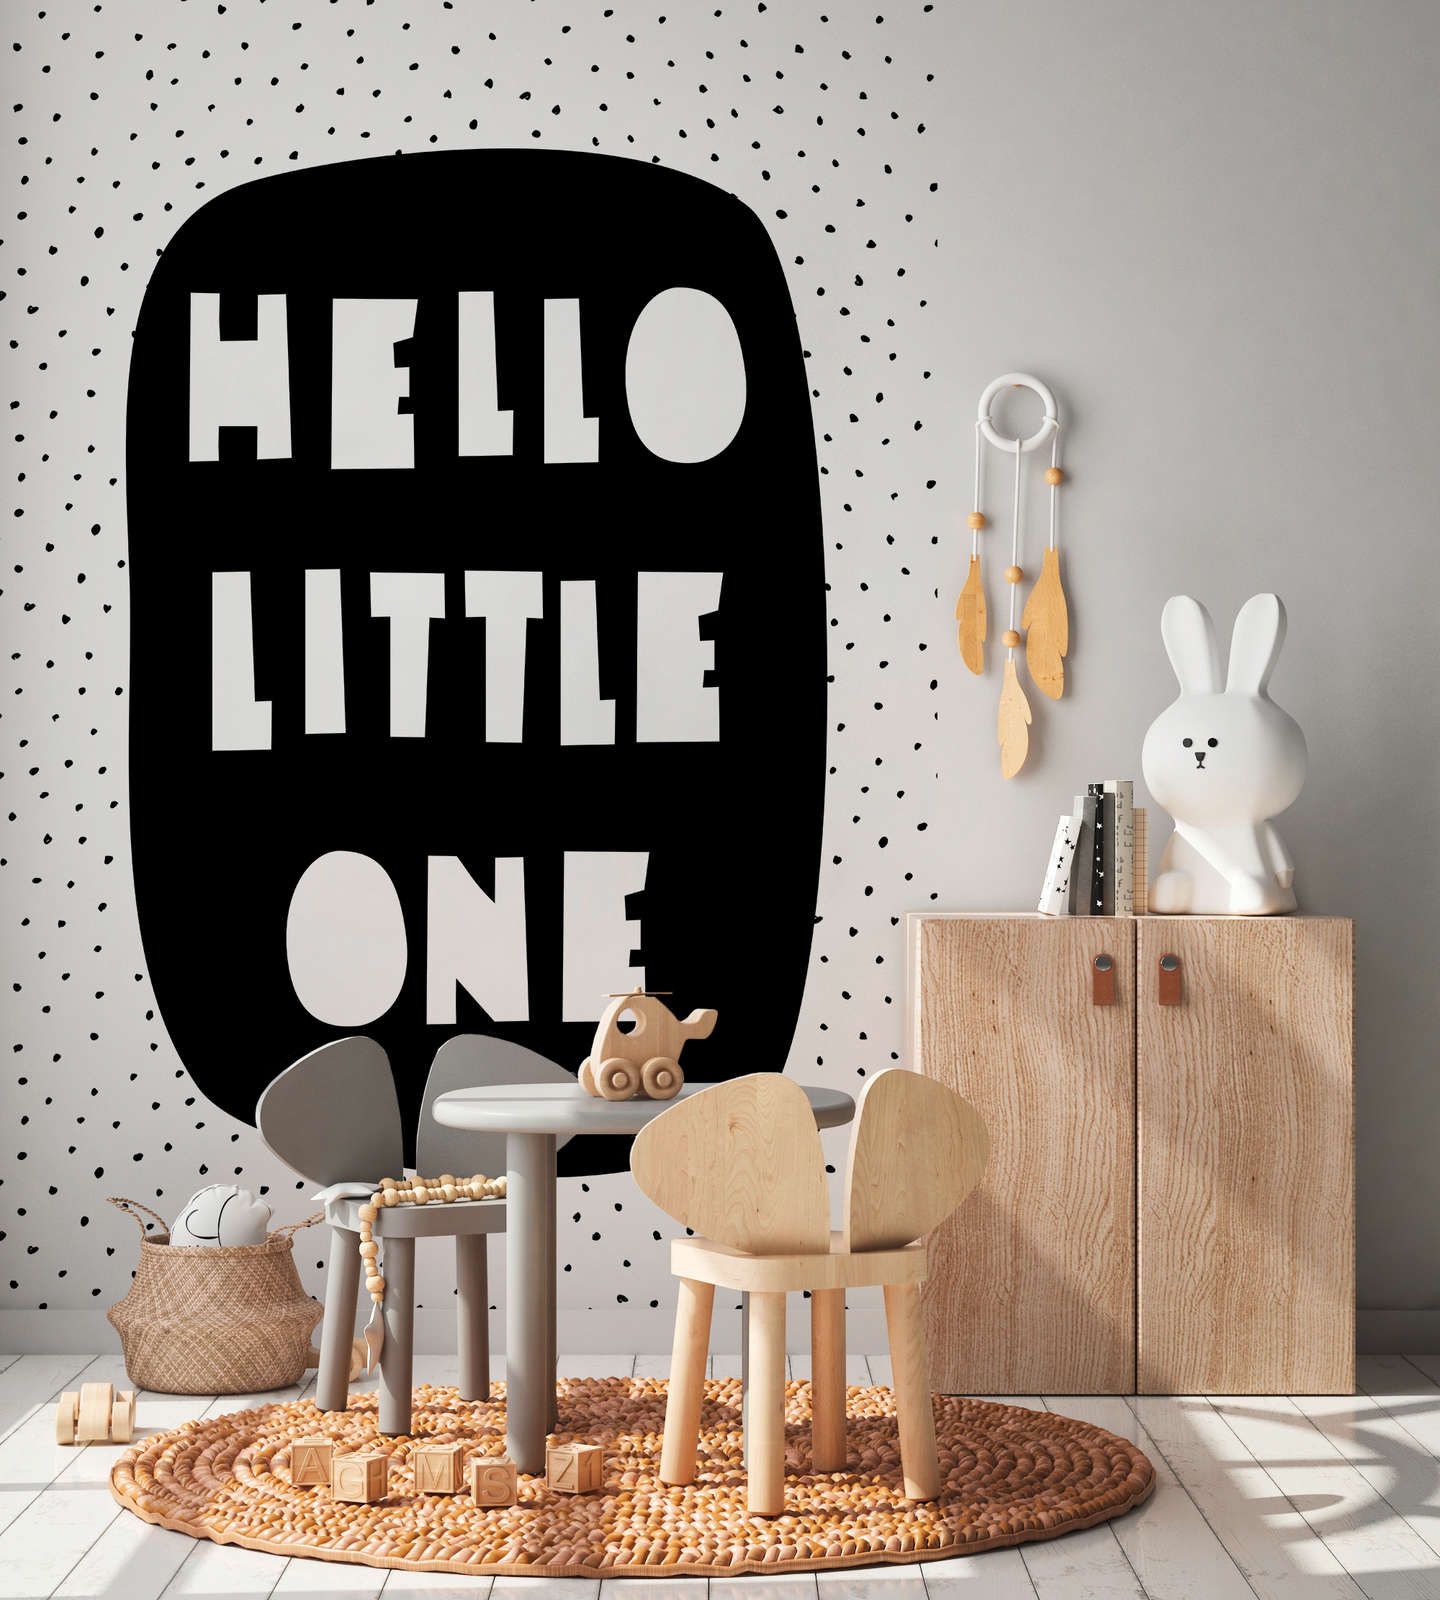             papiers peints à impression numérique pour chambre d'enfant avec inscription "Hello Little One" - intissé lisse & mat
        